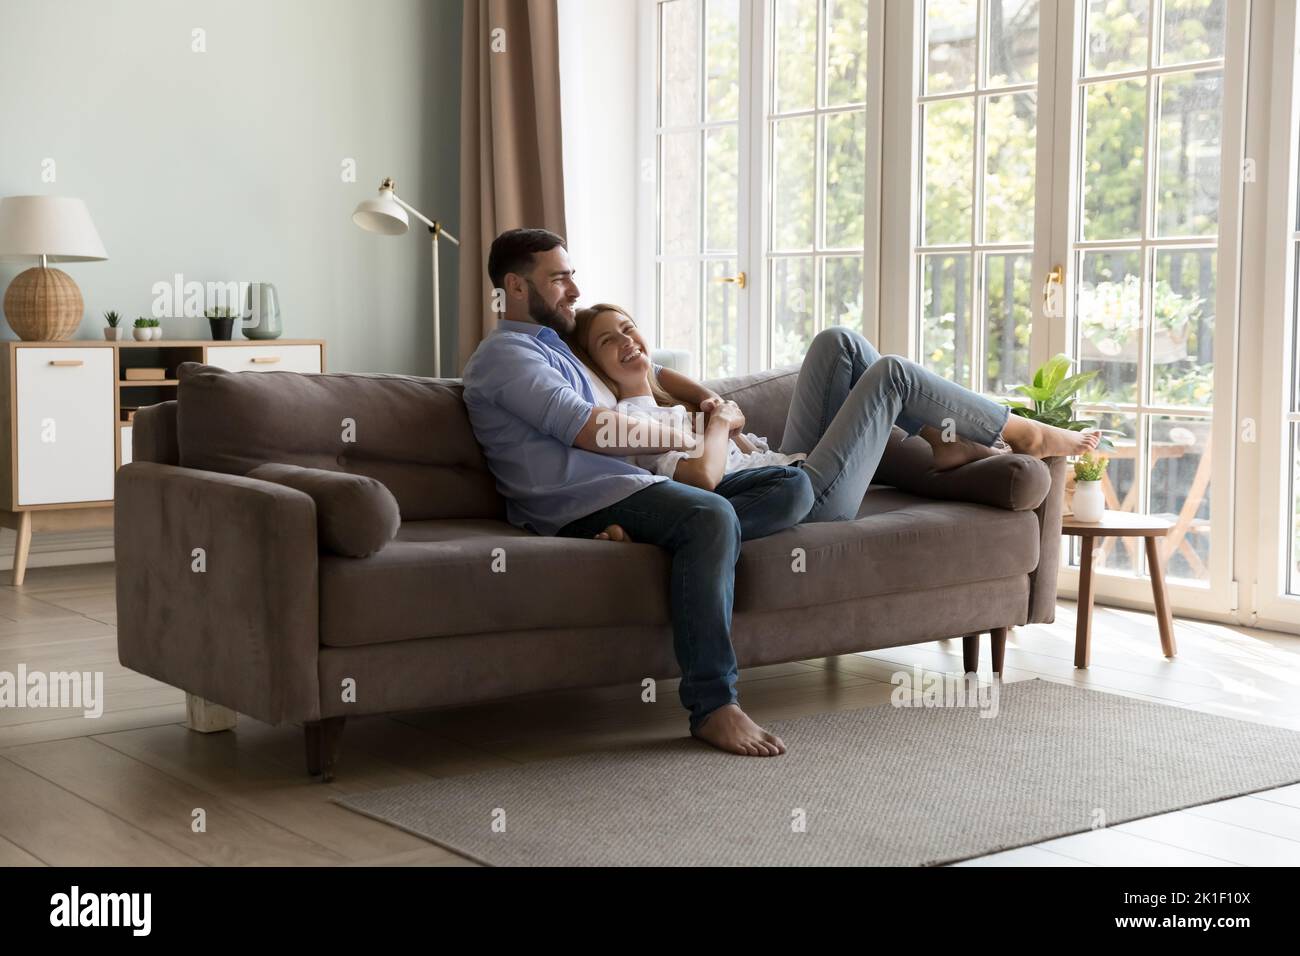 Un jeune couple heureux se détendant ensemble sur un canapé confortable Banque D'Images